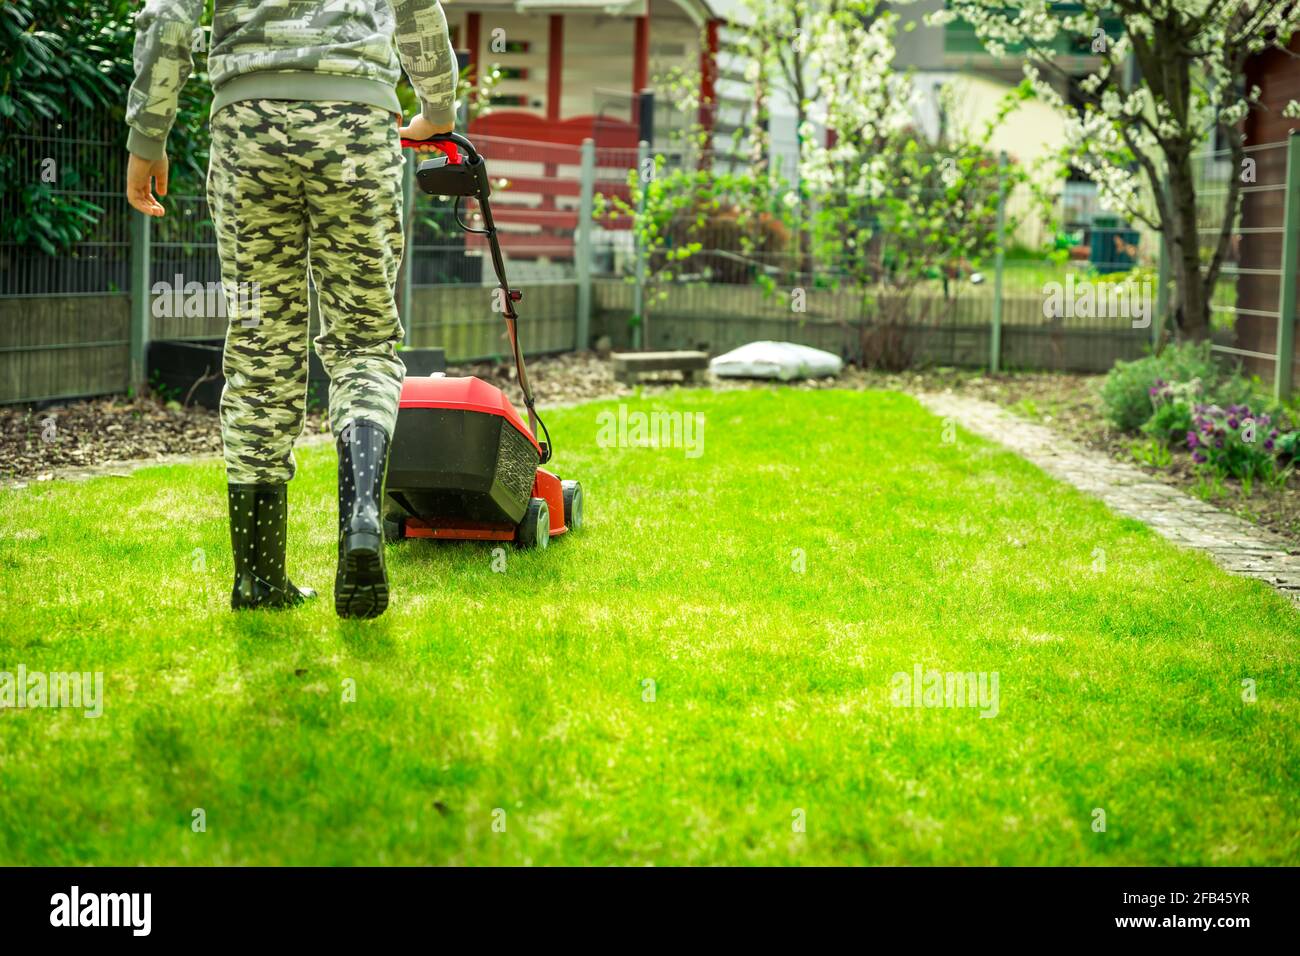 Entretien de pelouse - adolescent coupant la pelouse dans le petit jardin avec tondeuse électrique Banque D'Images